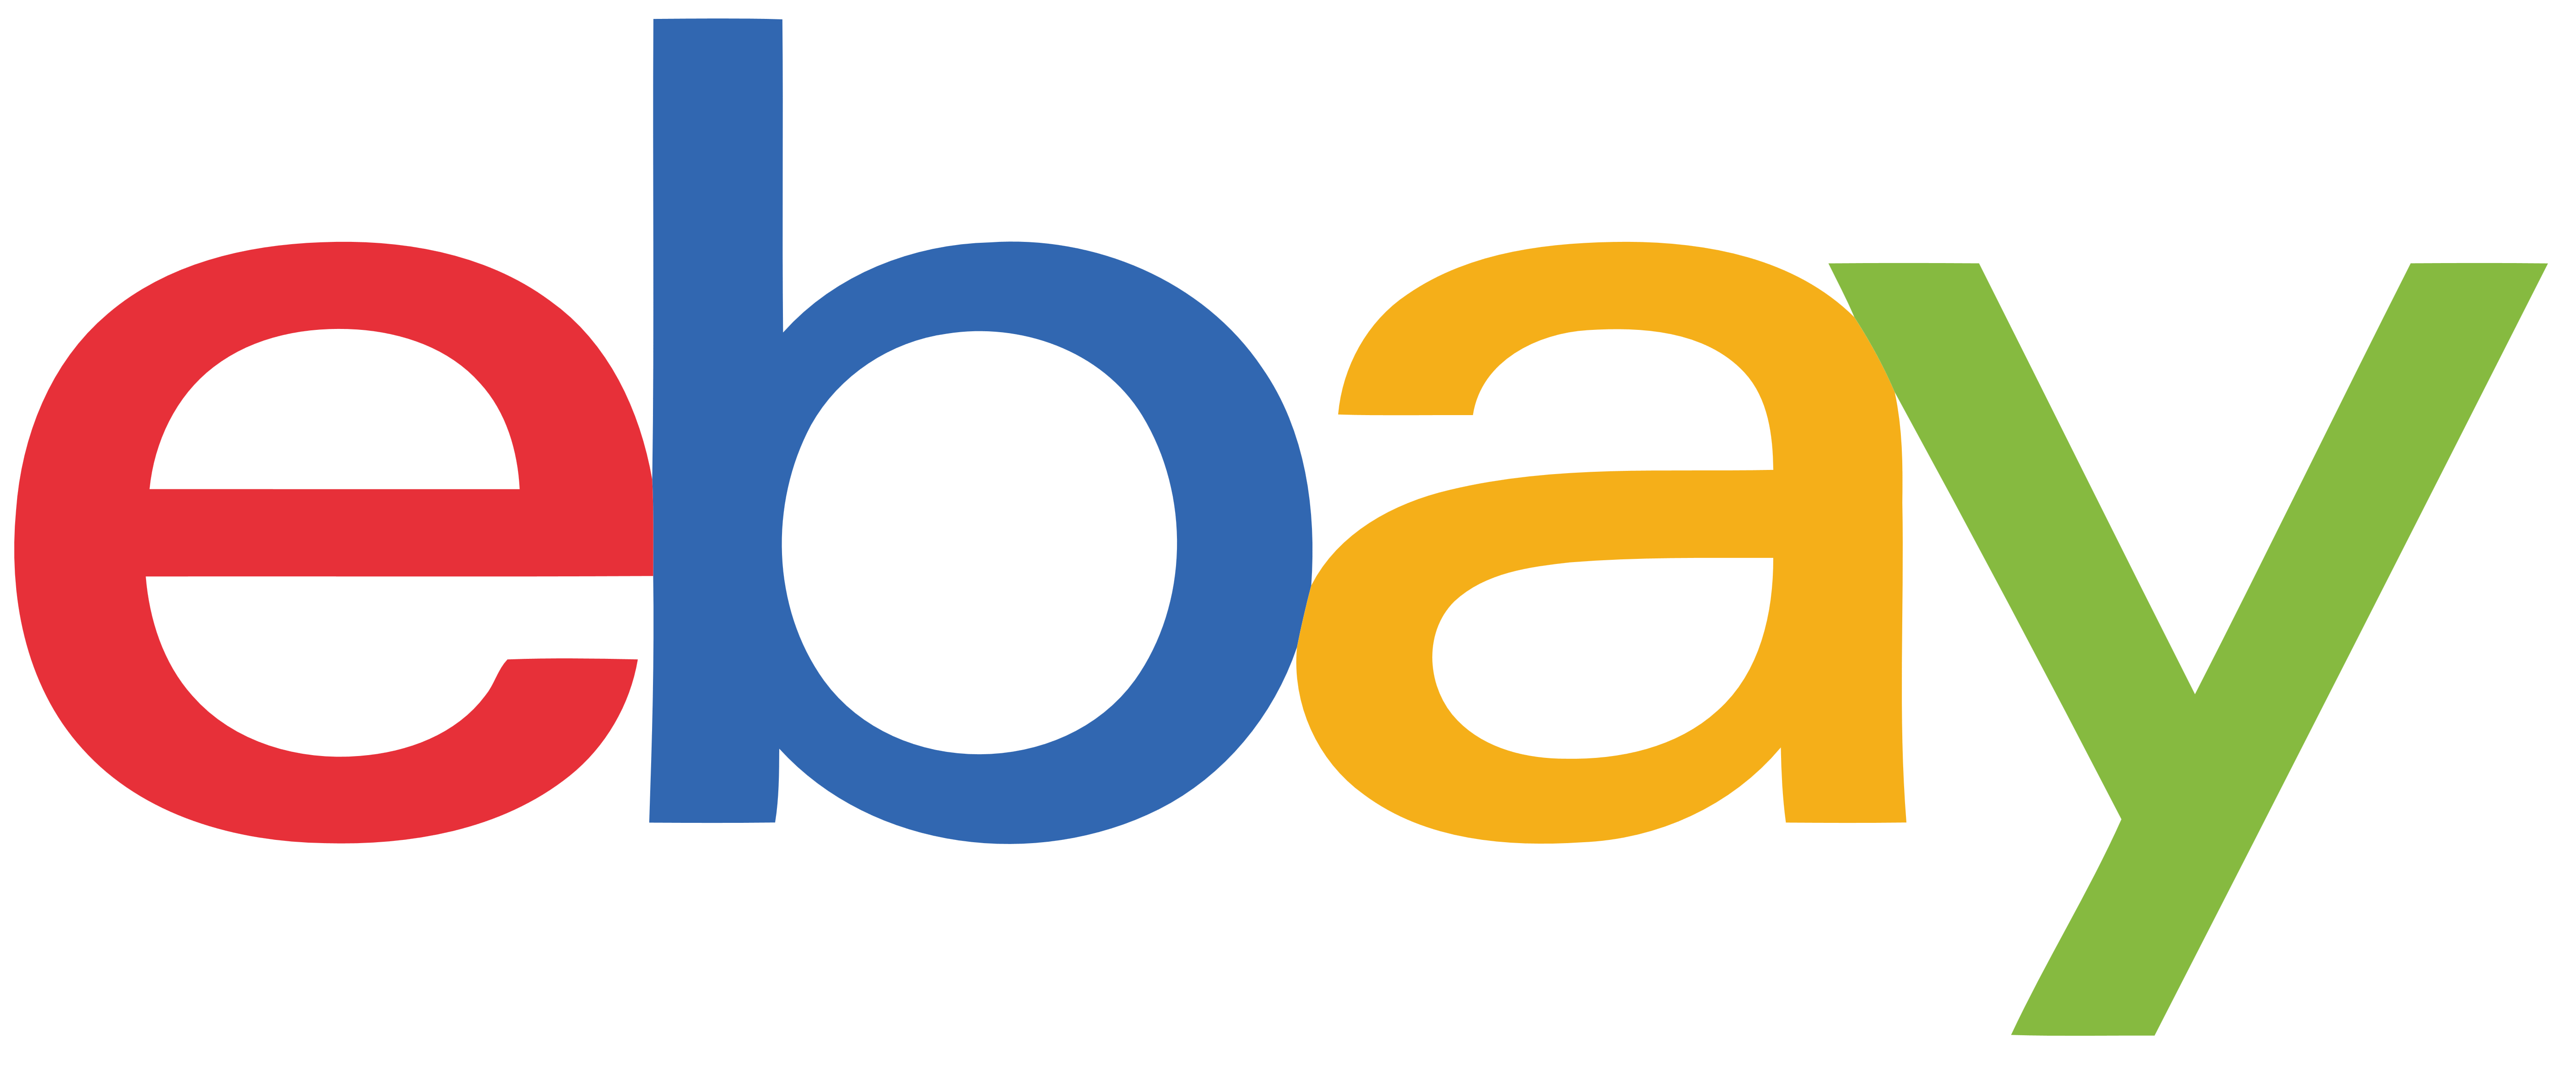 Ebay Logo